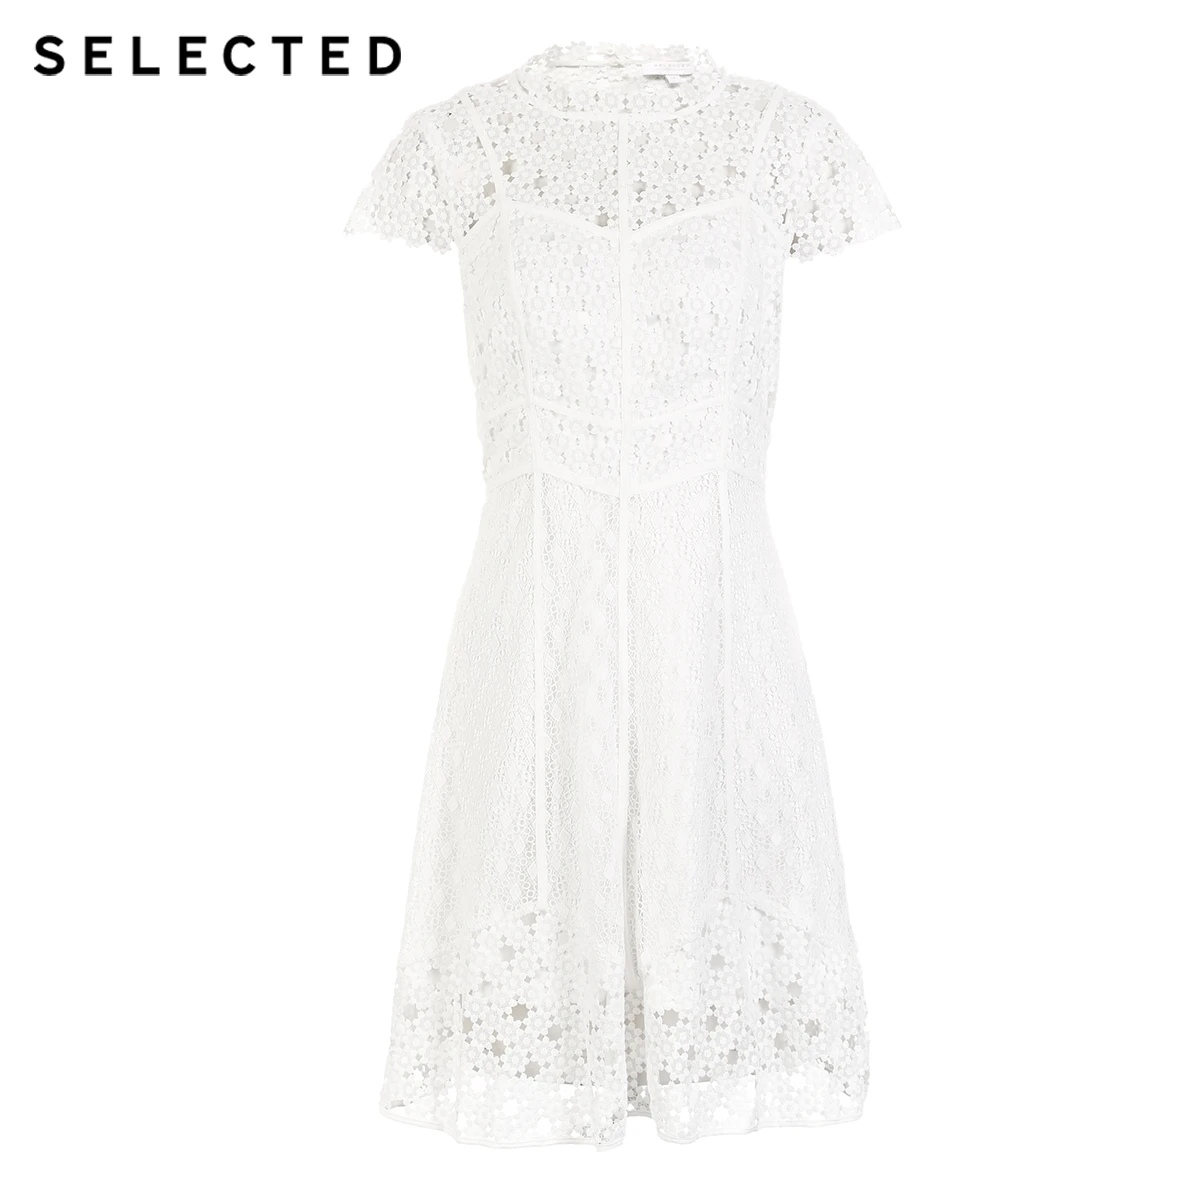 Отборное белое маленькое платье на подкладке с воротником-стойкой | 41912J516